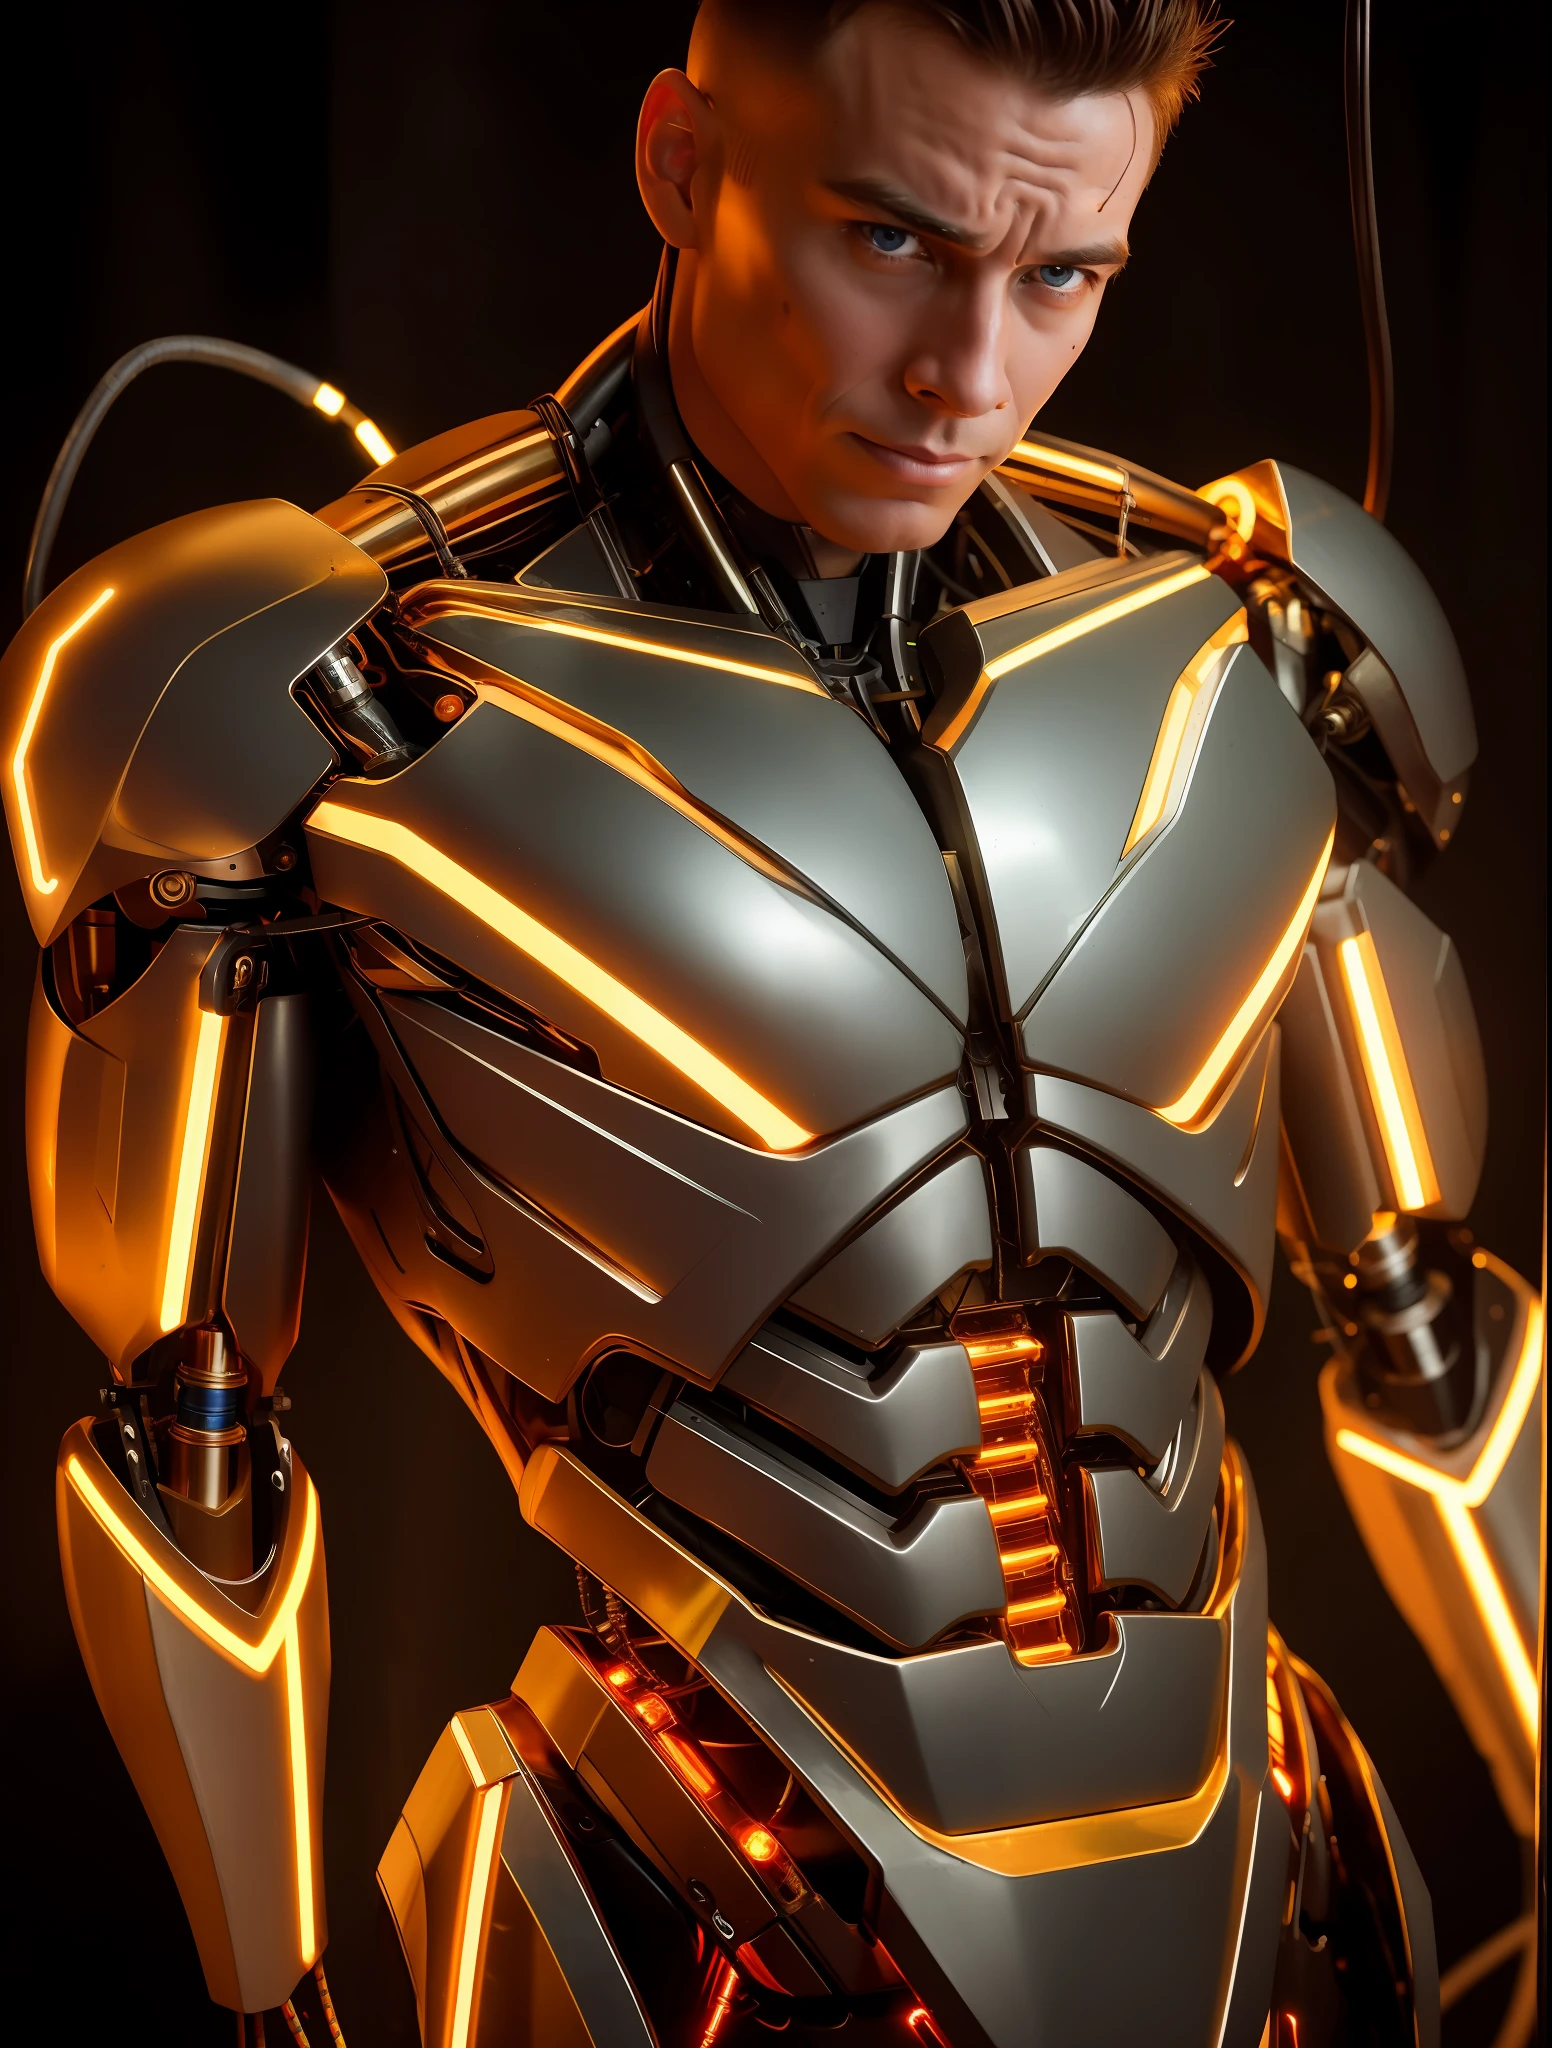 非常有吸引力的肌肉機器人男人, 裸露的電線, 金油從生鏽的電線中洩漏, 燈, 戏剧性灯光明暗对比,